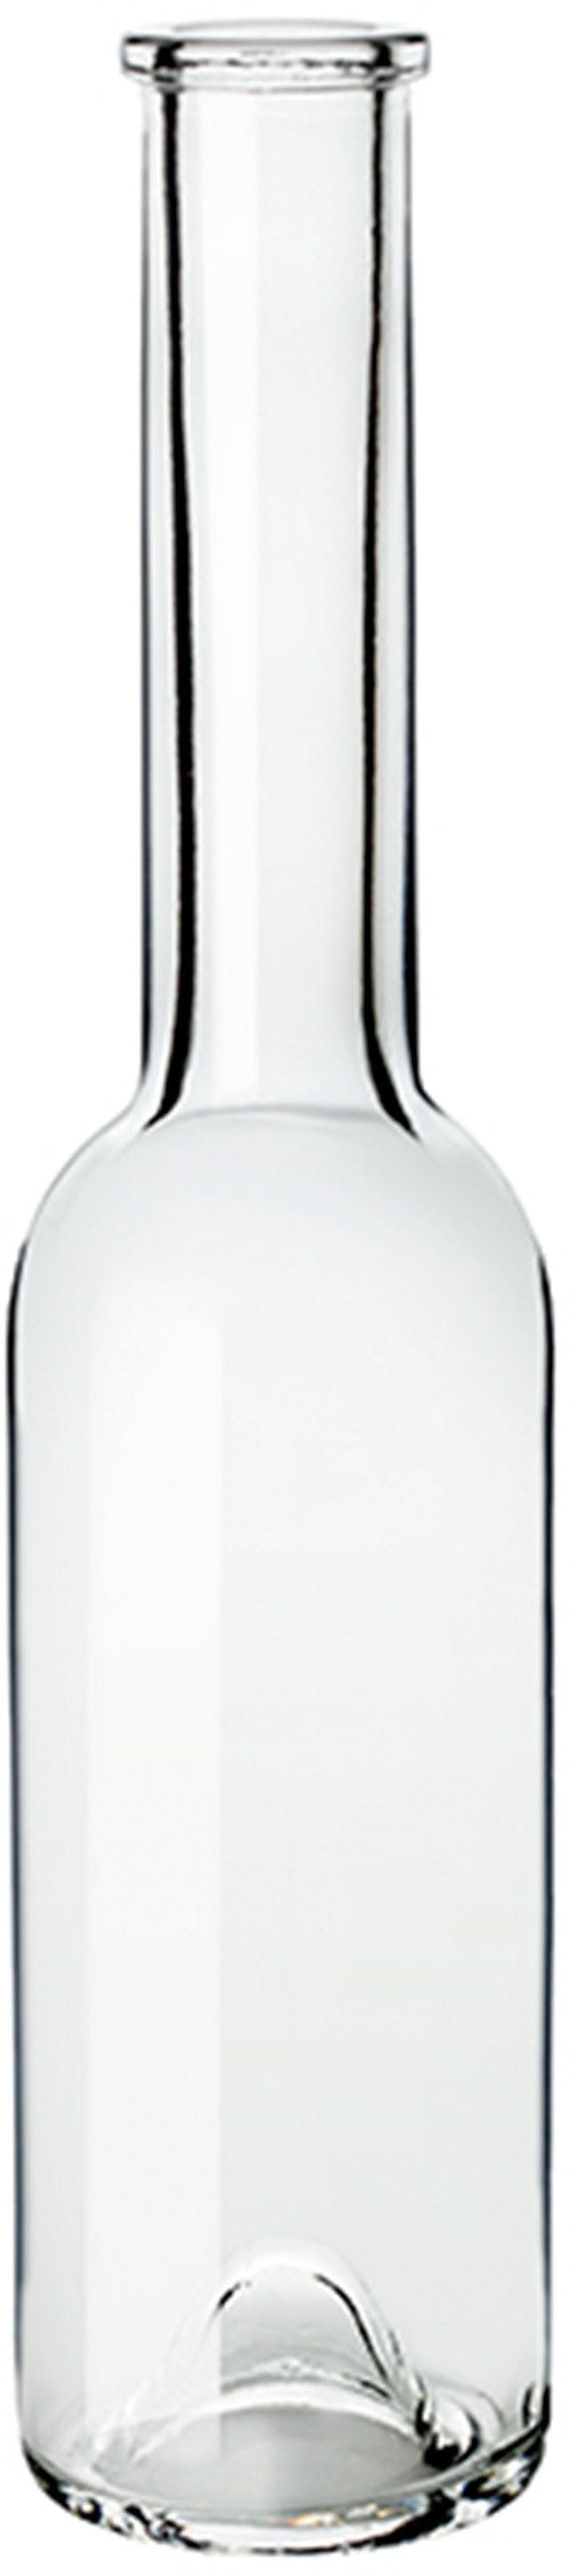 Bottle SINFONIA  OPERA 200 ml BG-Cork